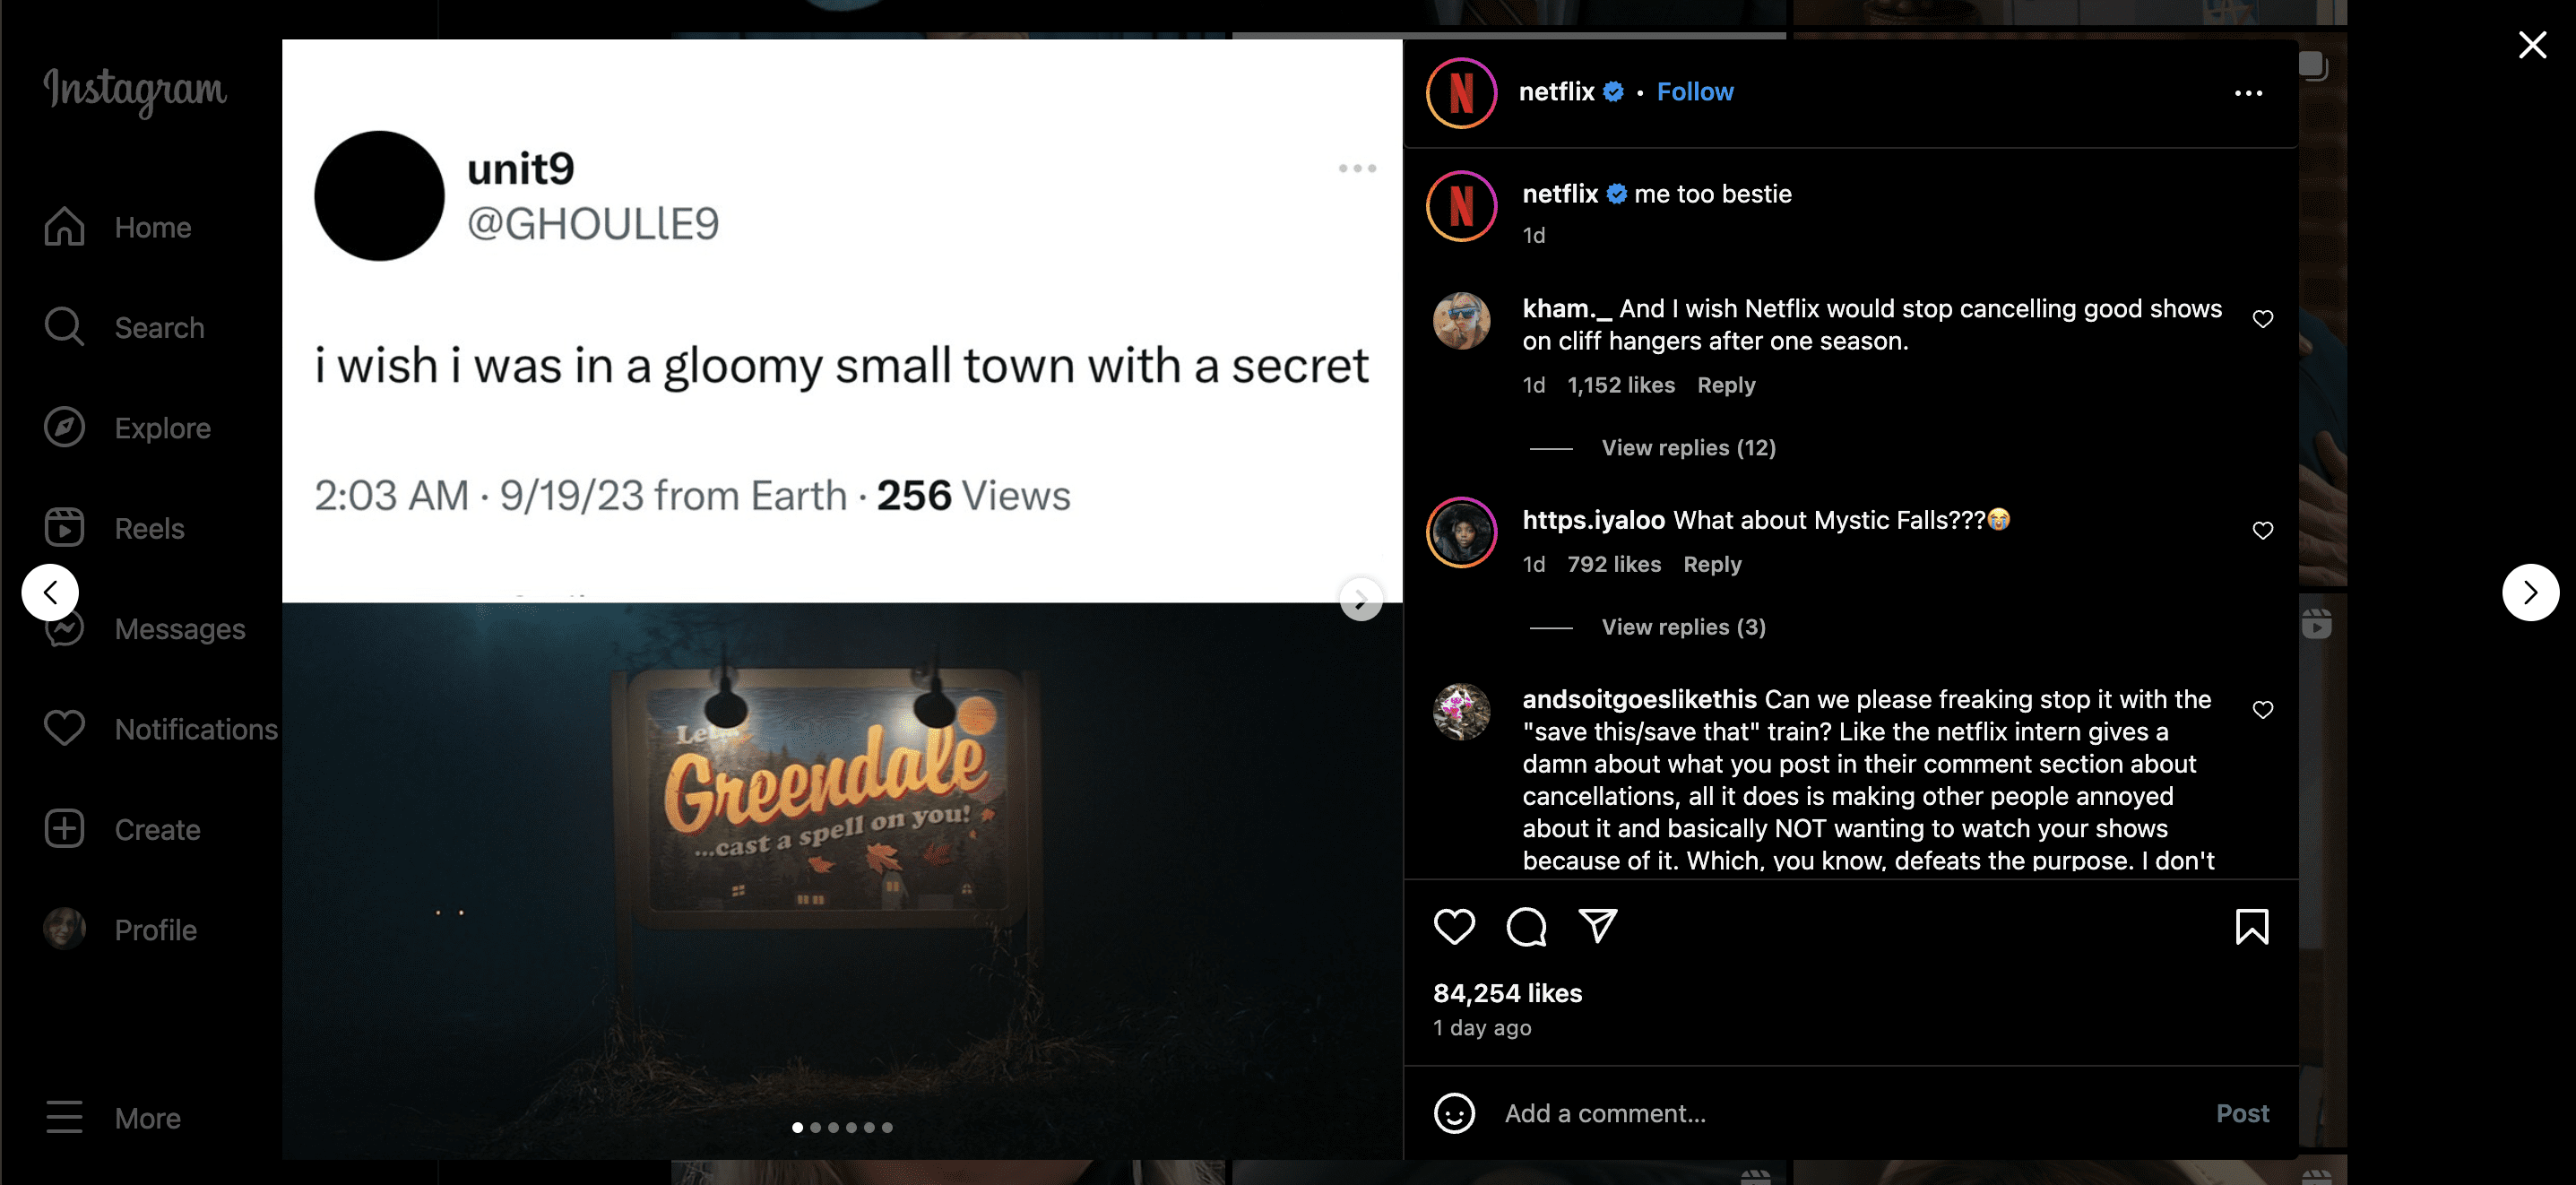 Netflix’s Instagram post